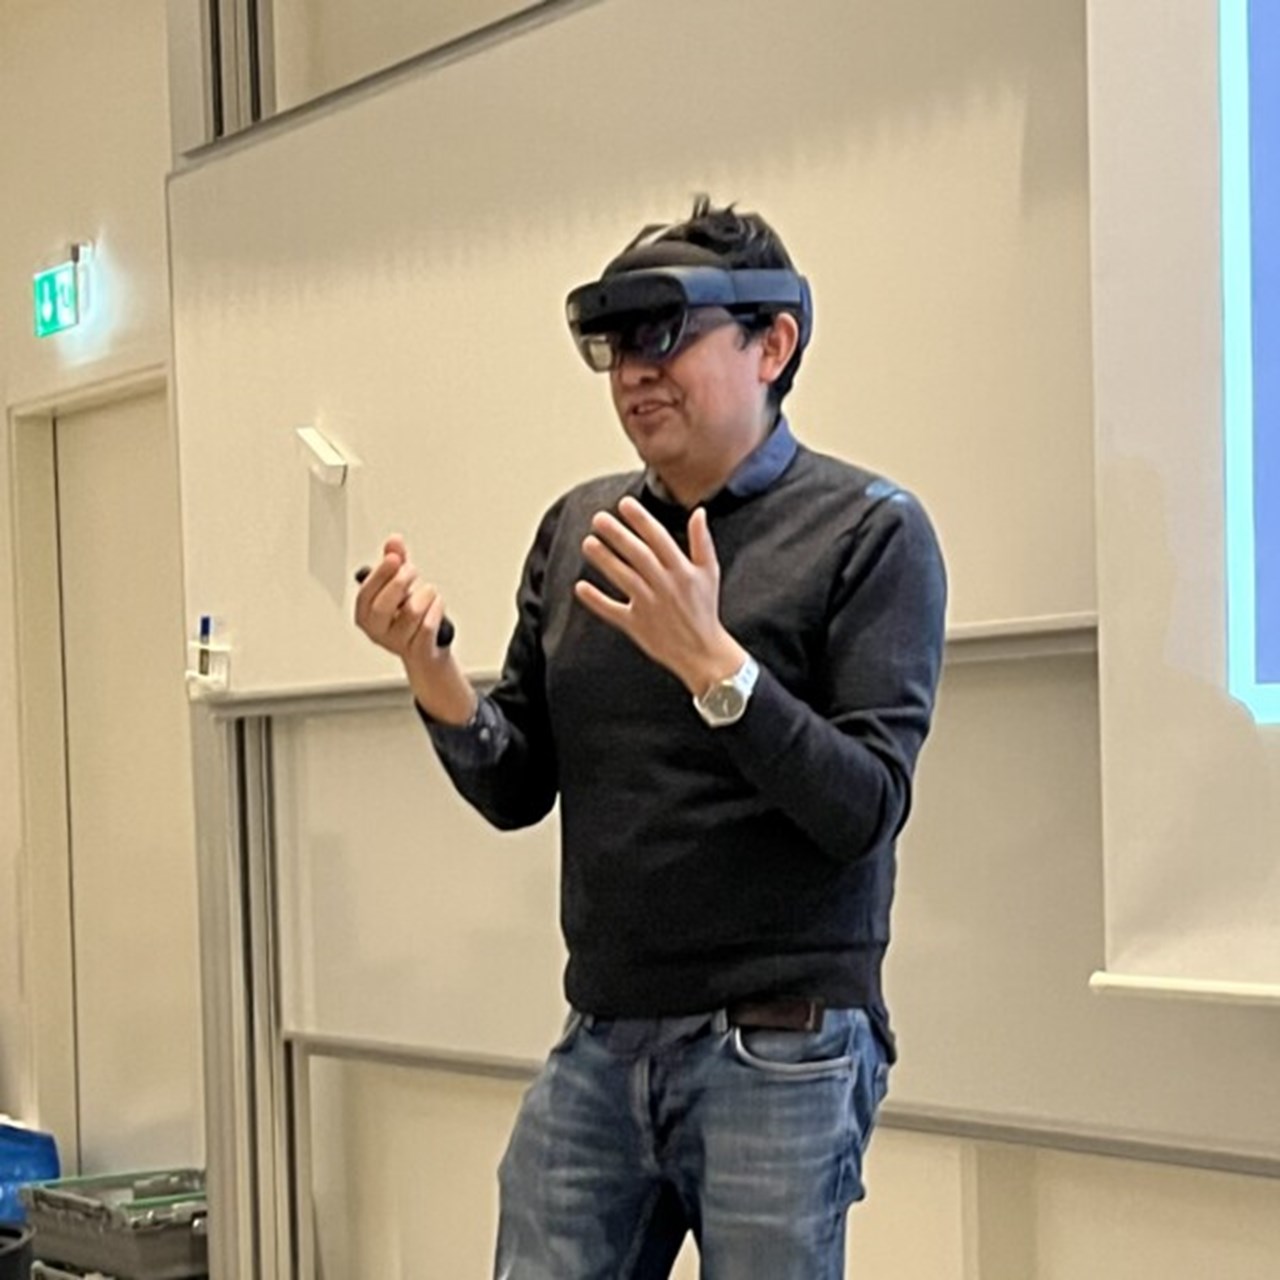 Juan Carlos med VR-glasögon